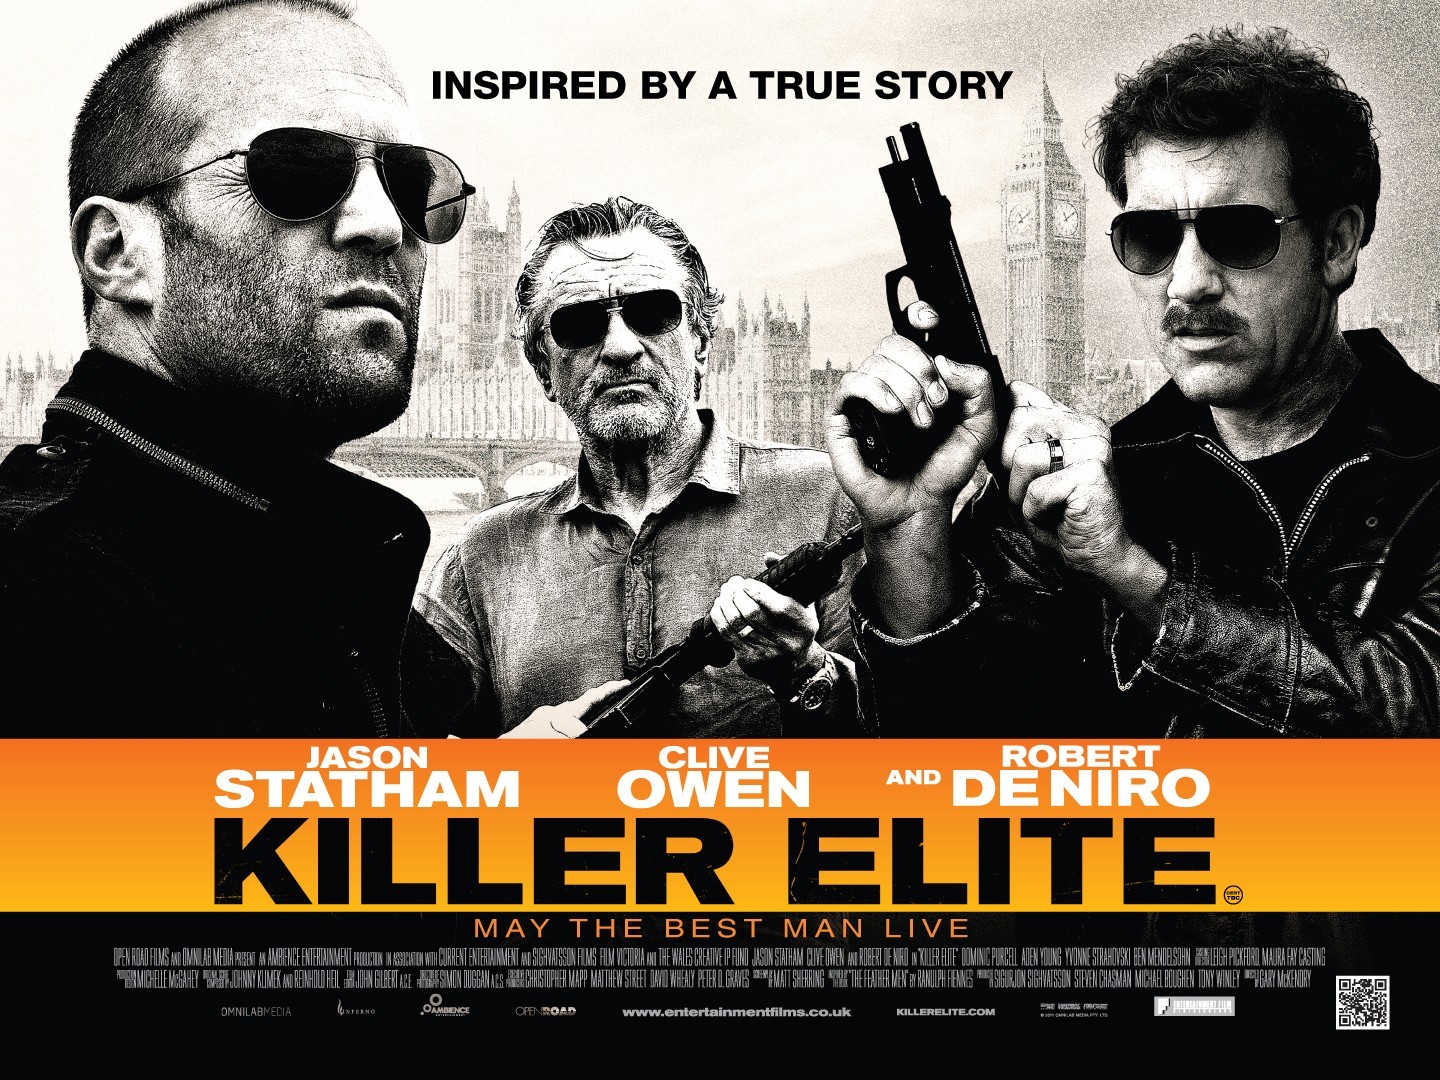 http://mindreels.files.wordpress.com/2012/06/killer-elite-poster.jpg